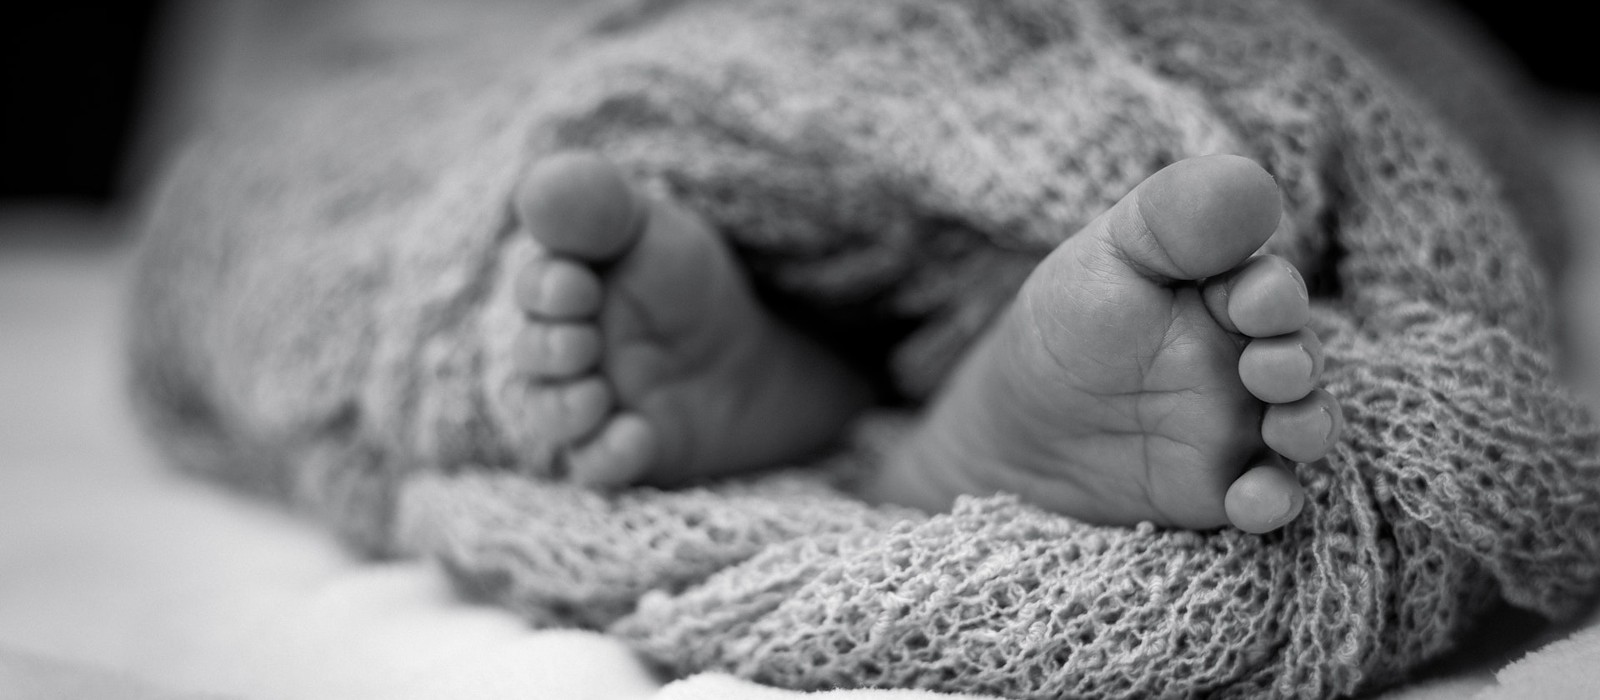 des pieds d'enfant depassent d'un linge. photo en noir et blanc